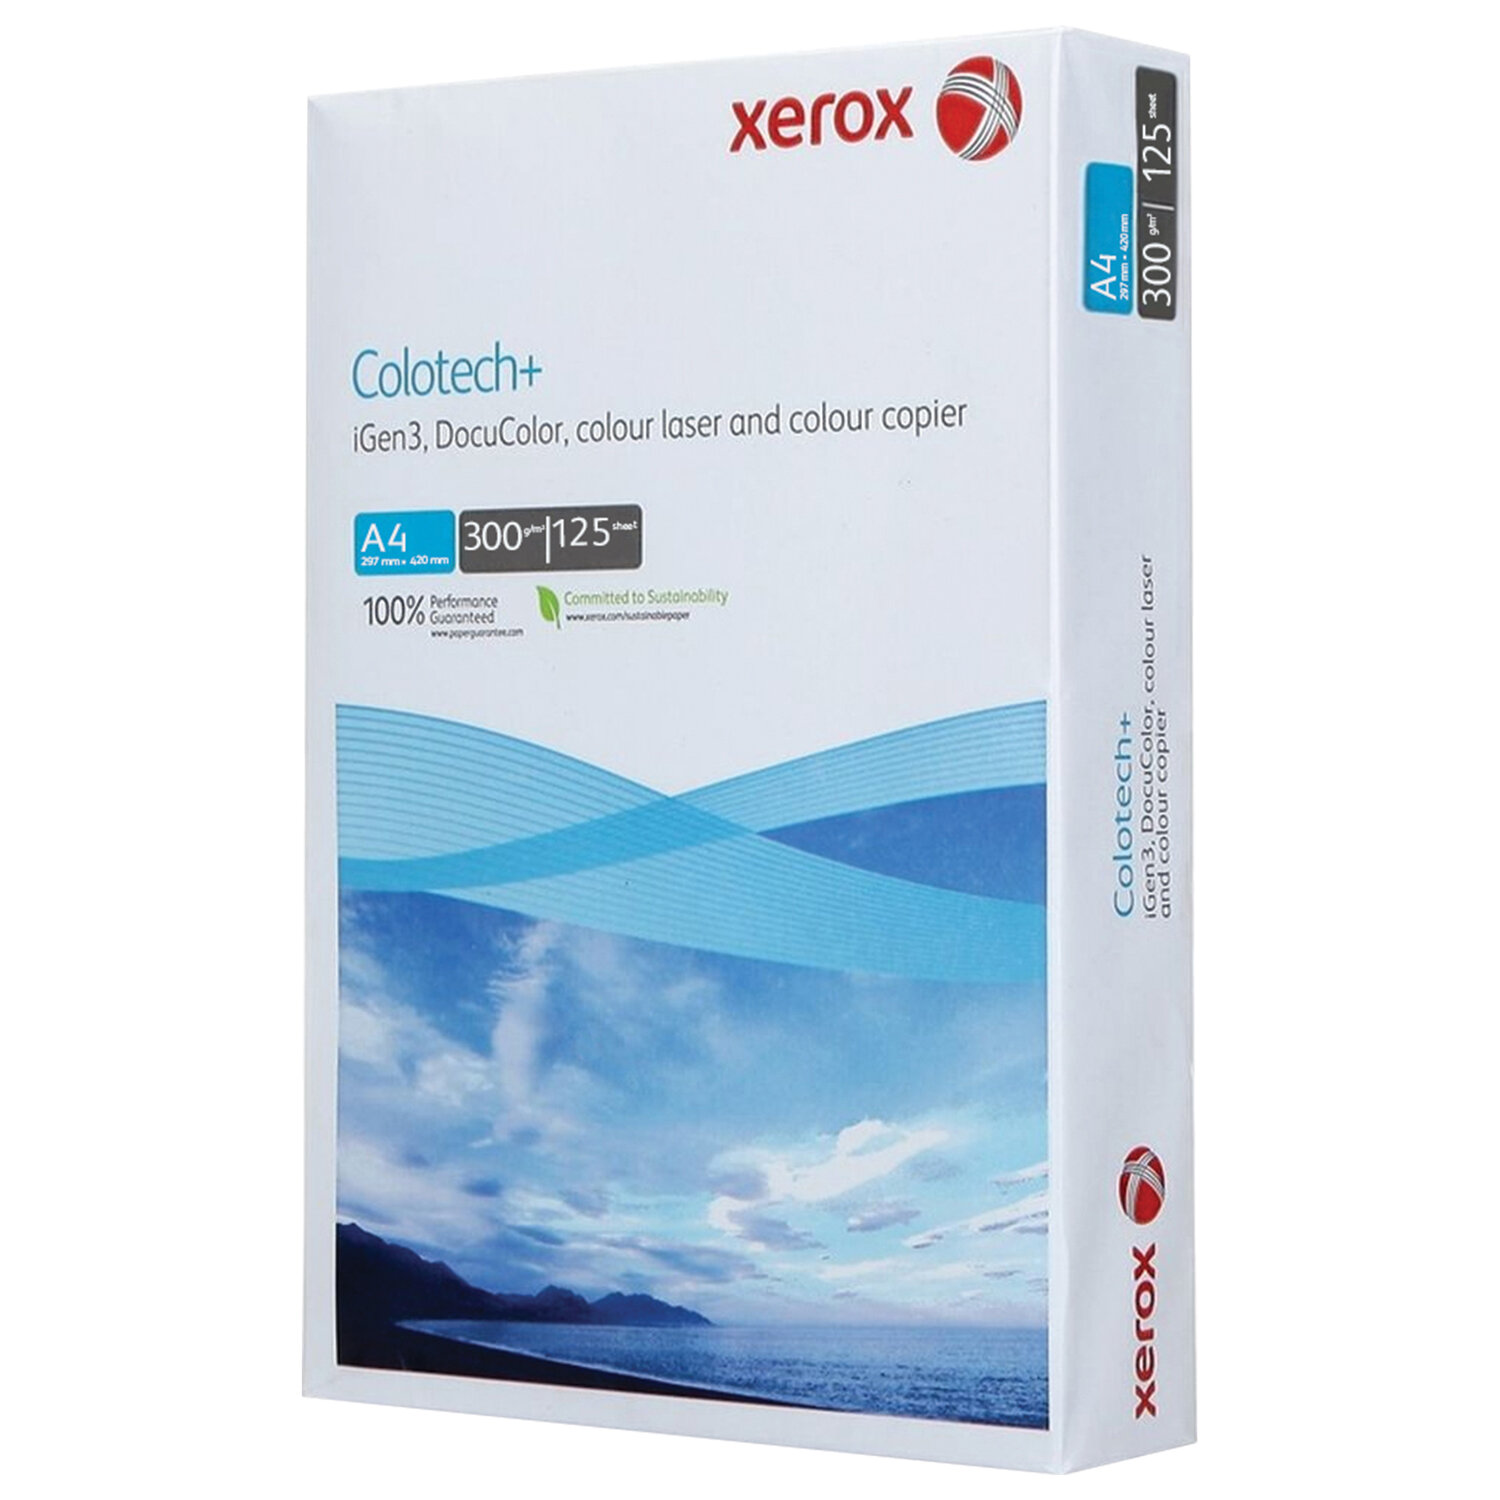      XEROX COLOTECH+ Blue 003R9755, 4, 300 /2, 125 ., 161%